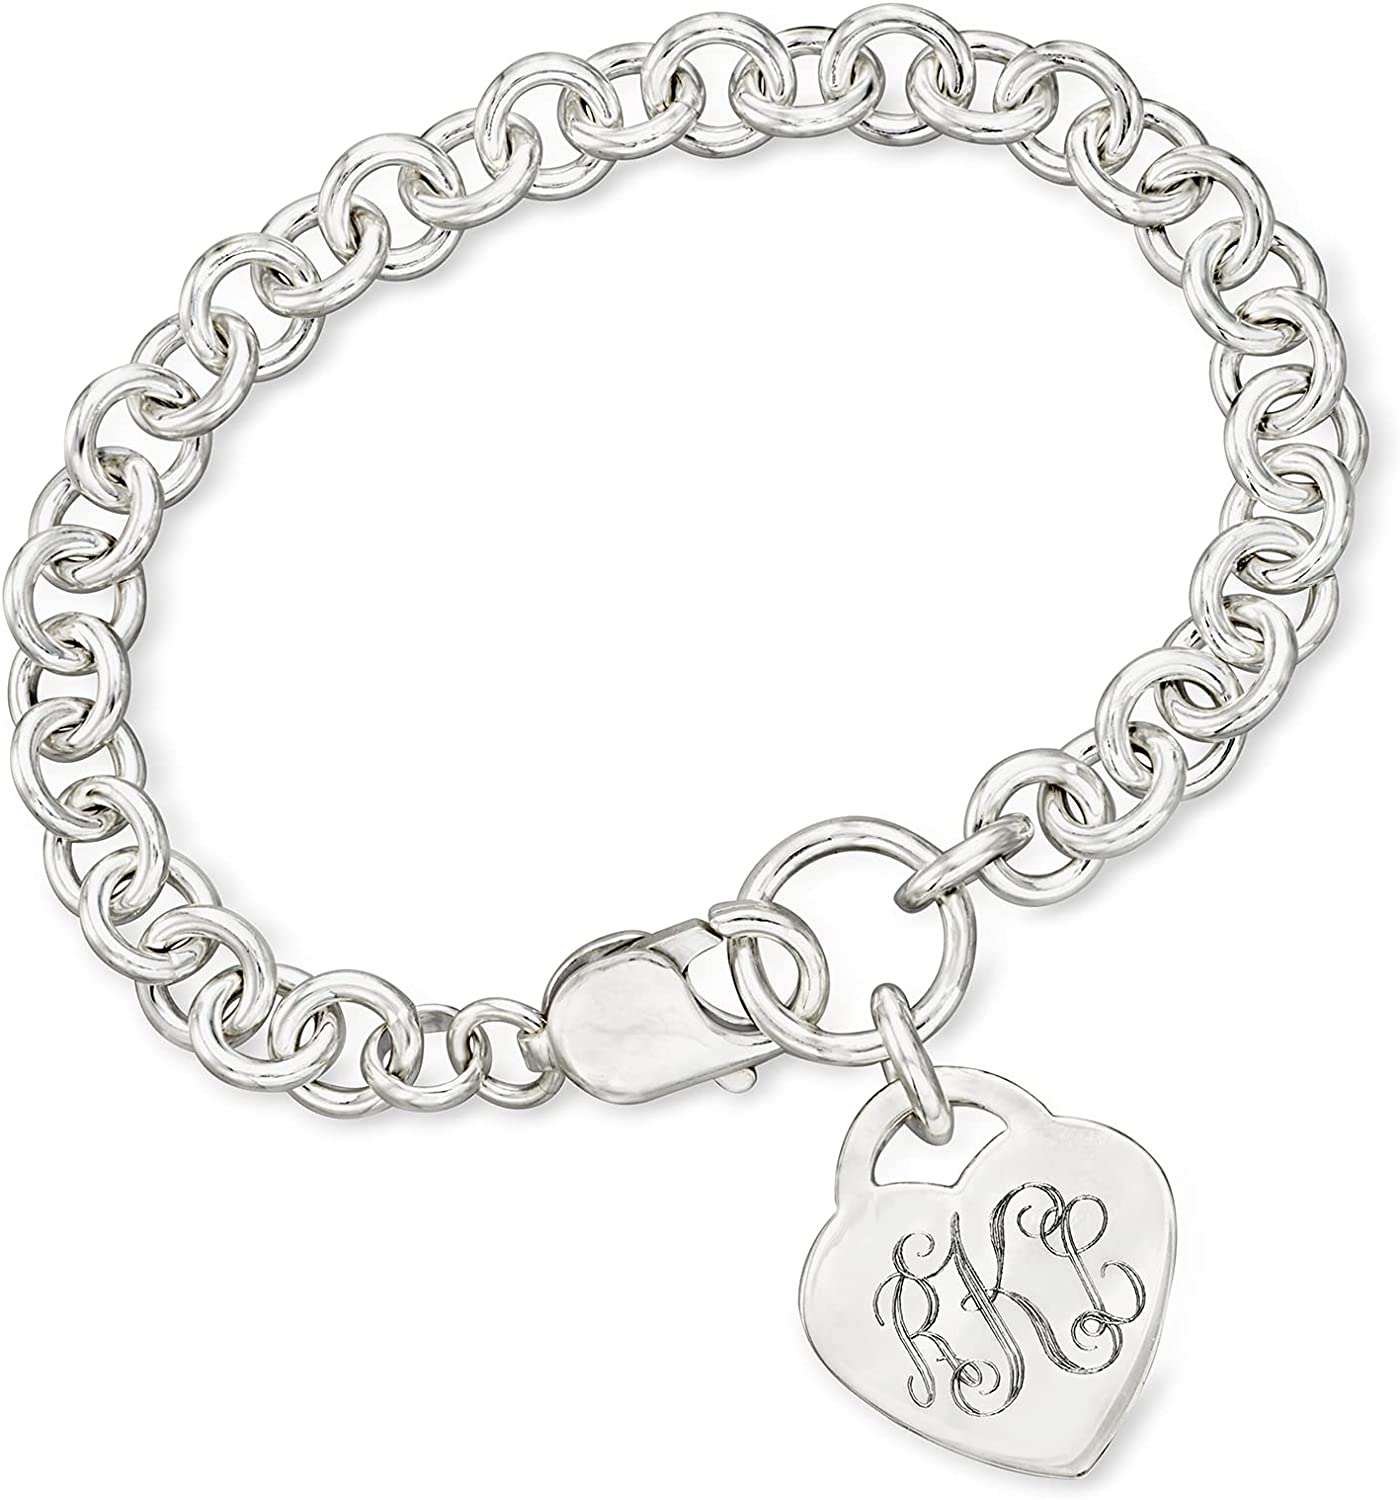 Louis Vuitton Charms For Bracelets WholeSale - Price List, Bulk Buy at